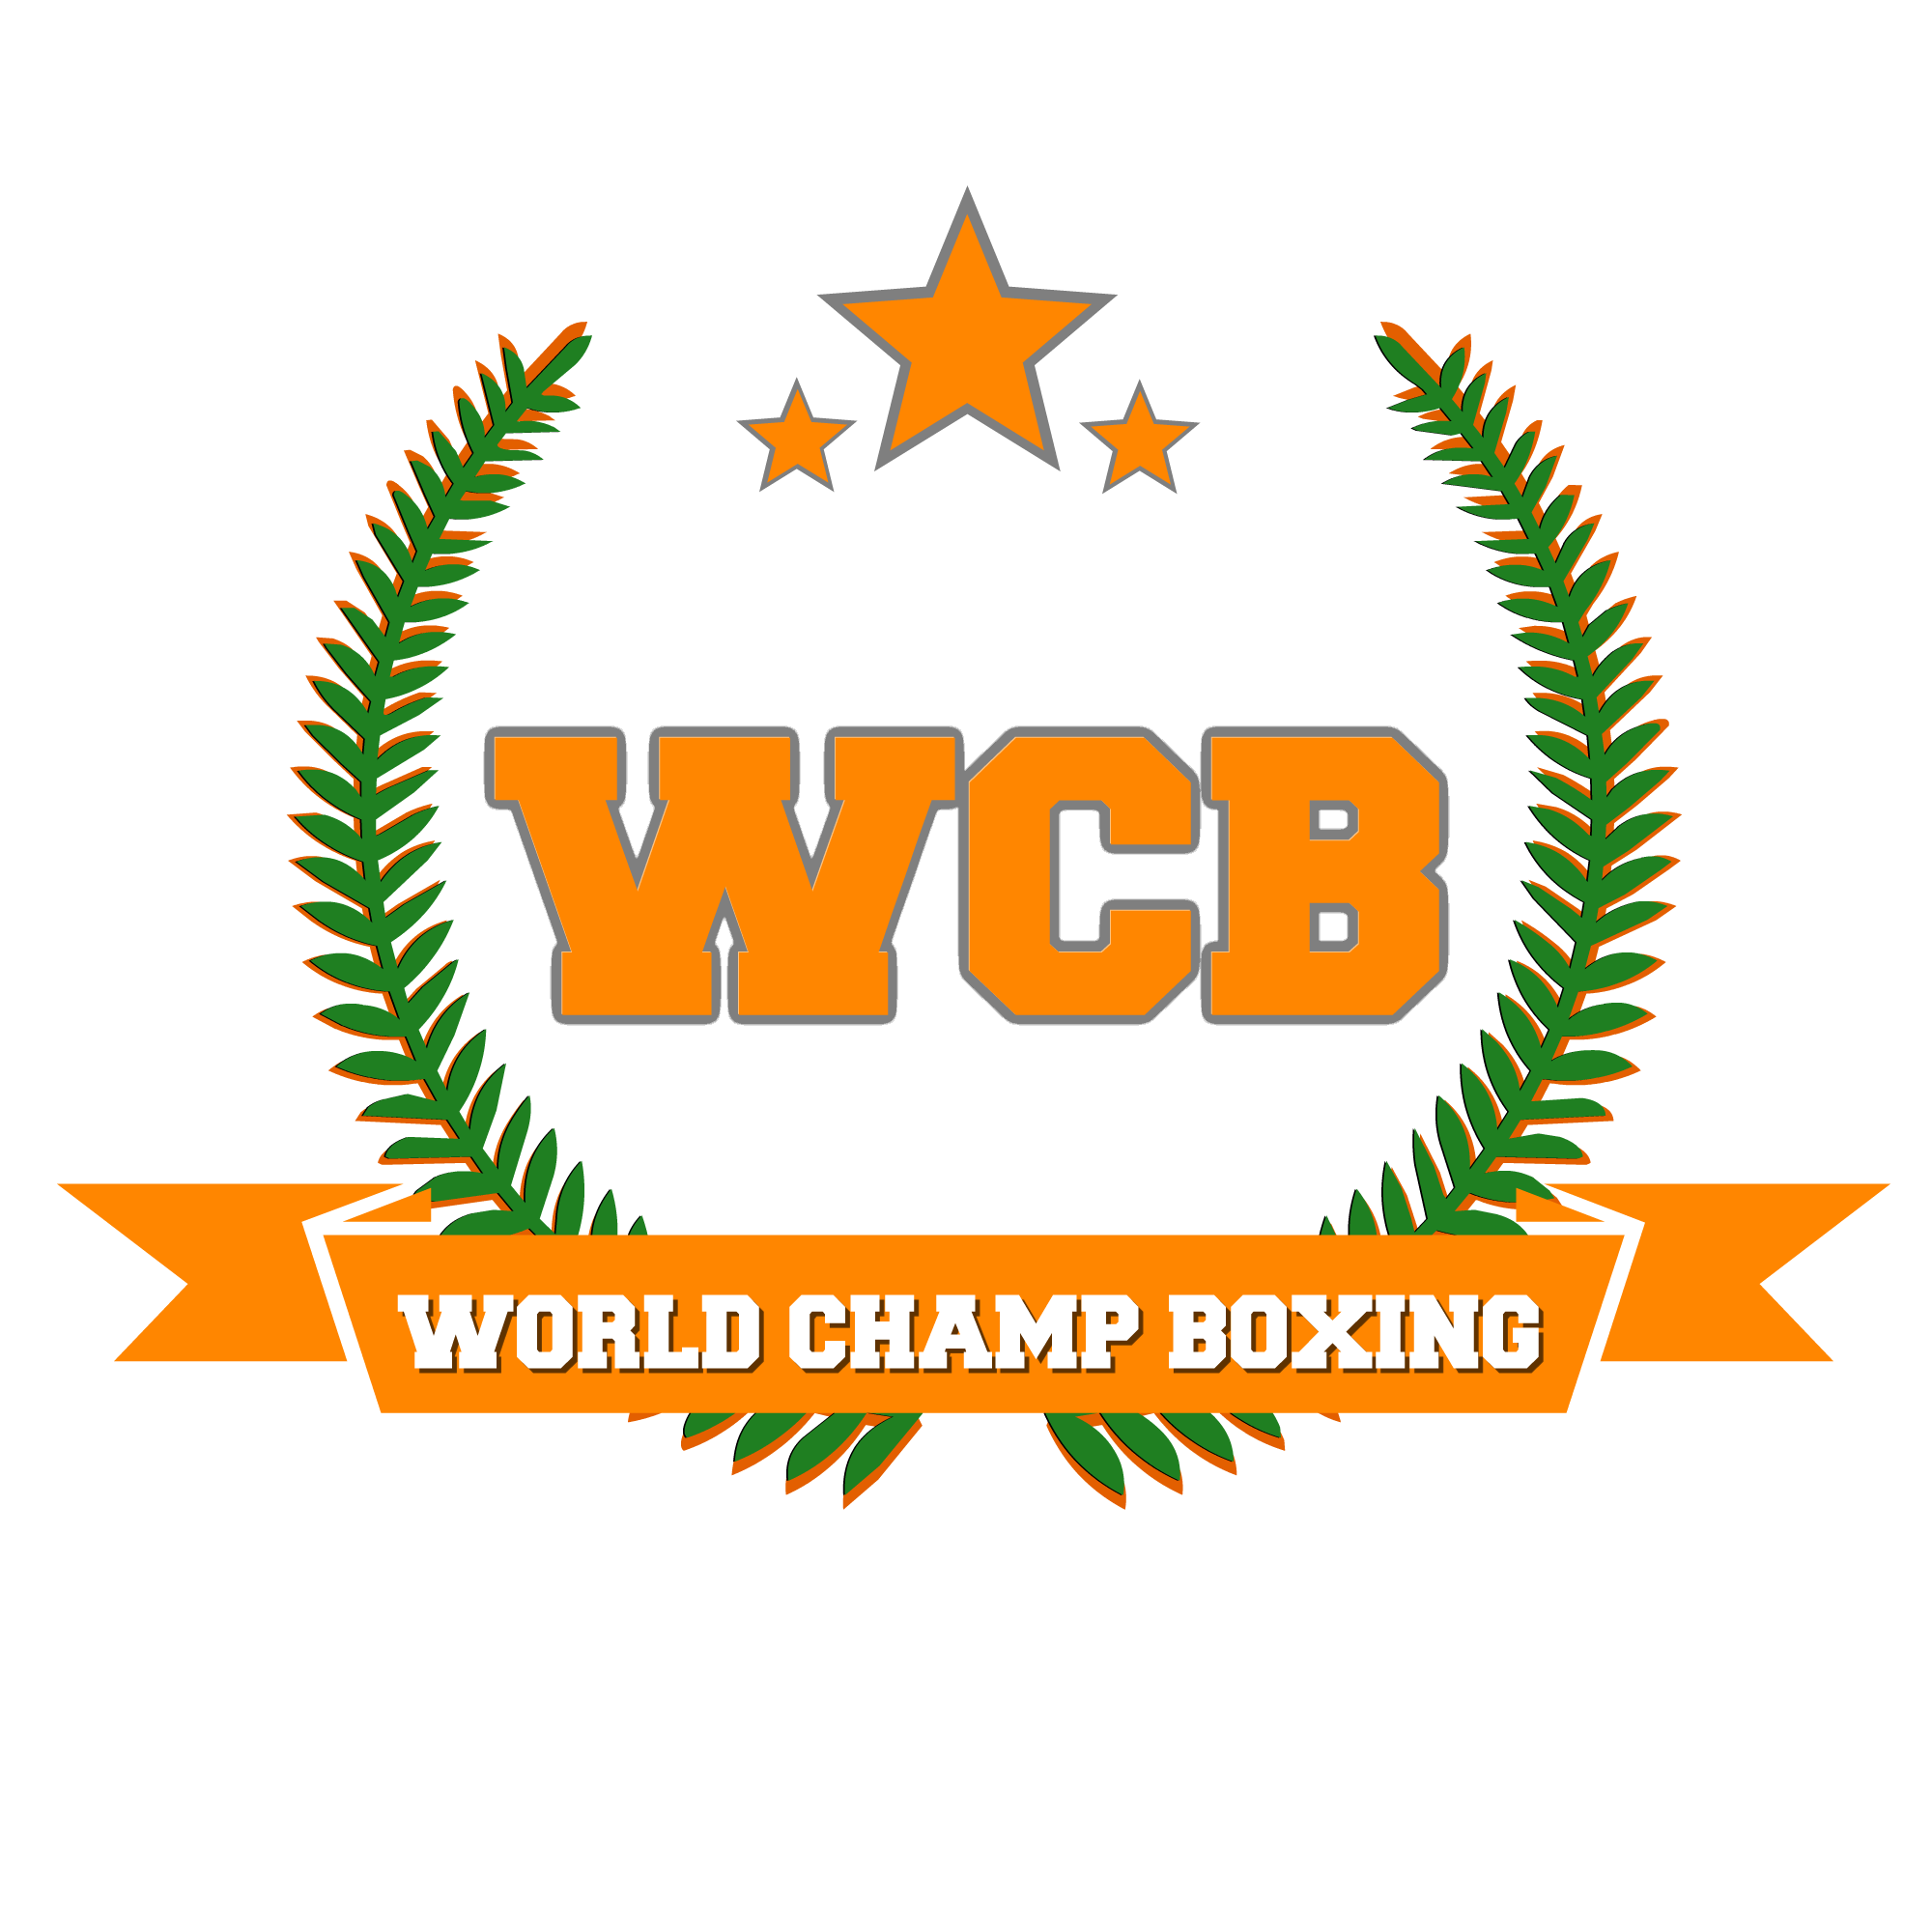 World Champ Boxing